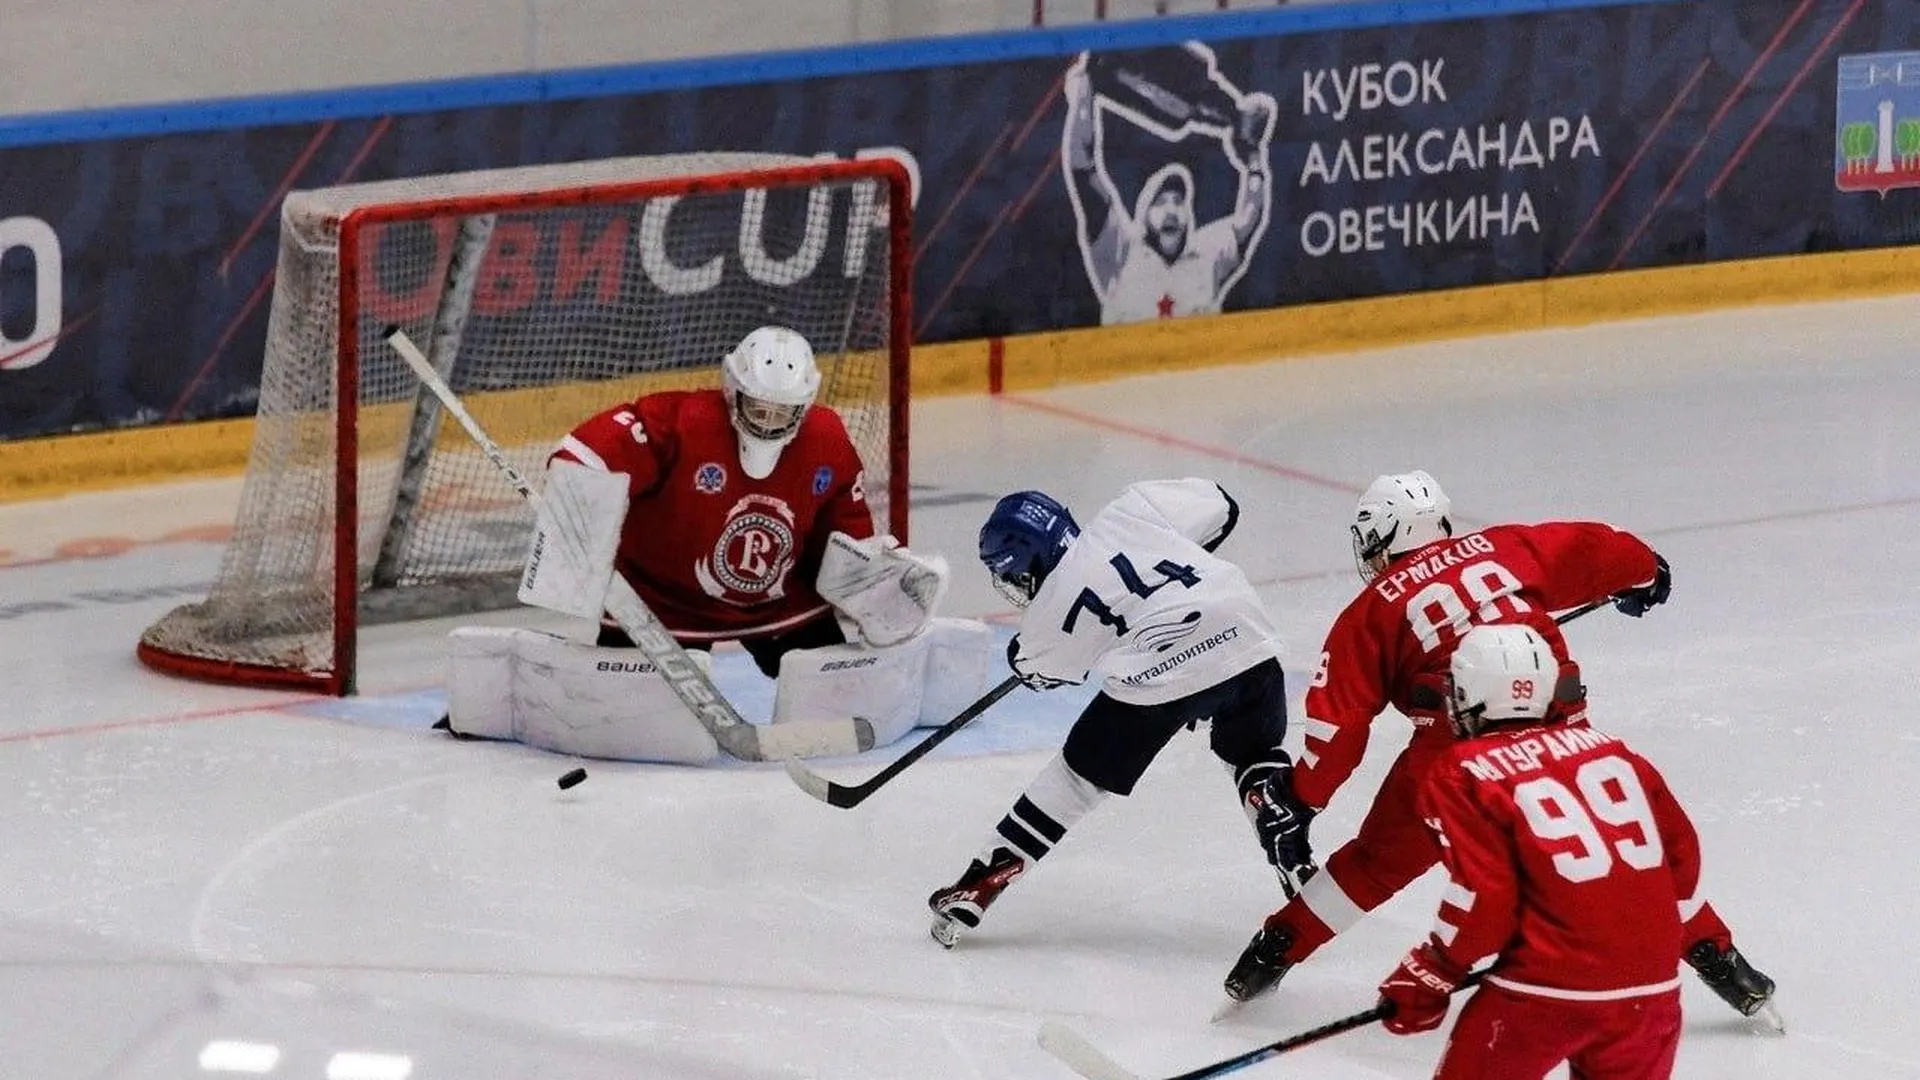 12 команд сразятся в юбилейном турнире «Кубок Александра Овечкина» в Подмосковье в августе